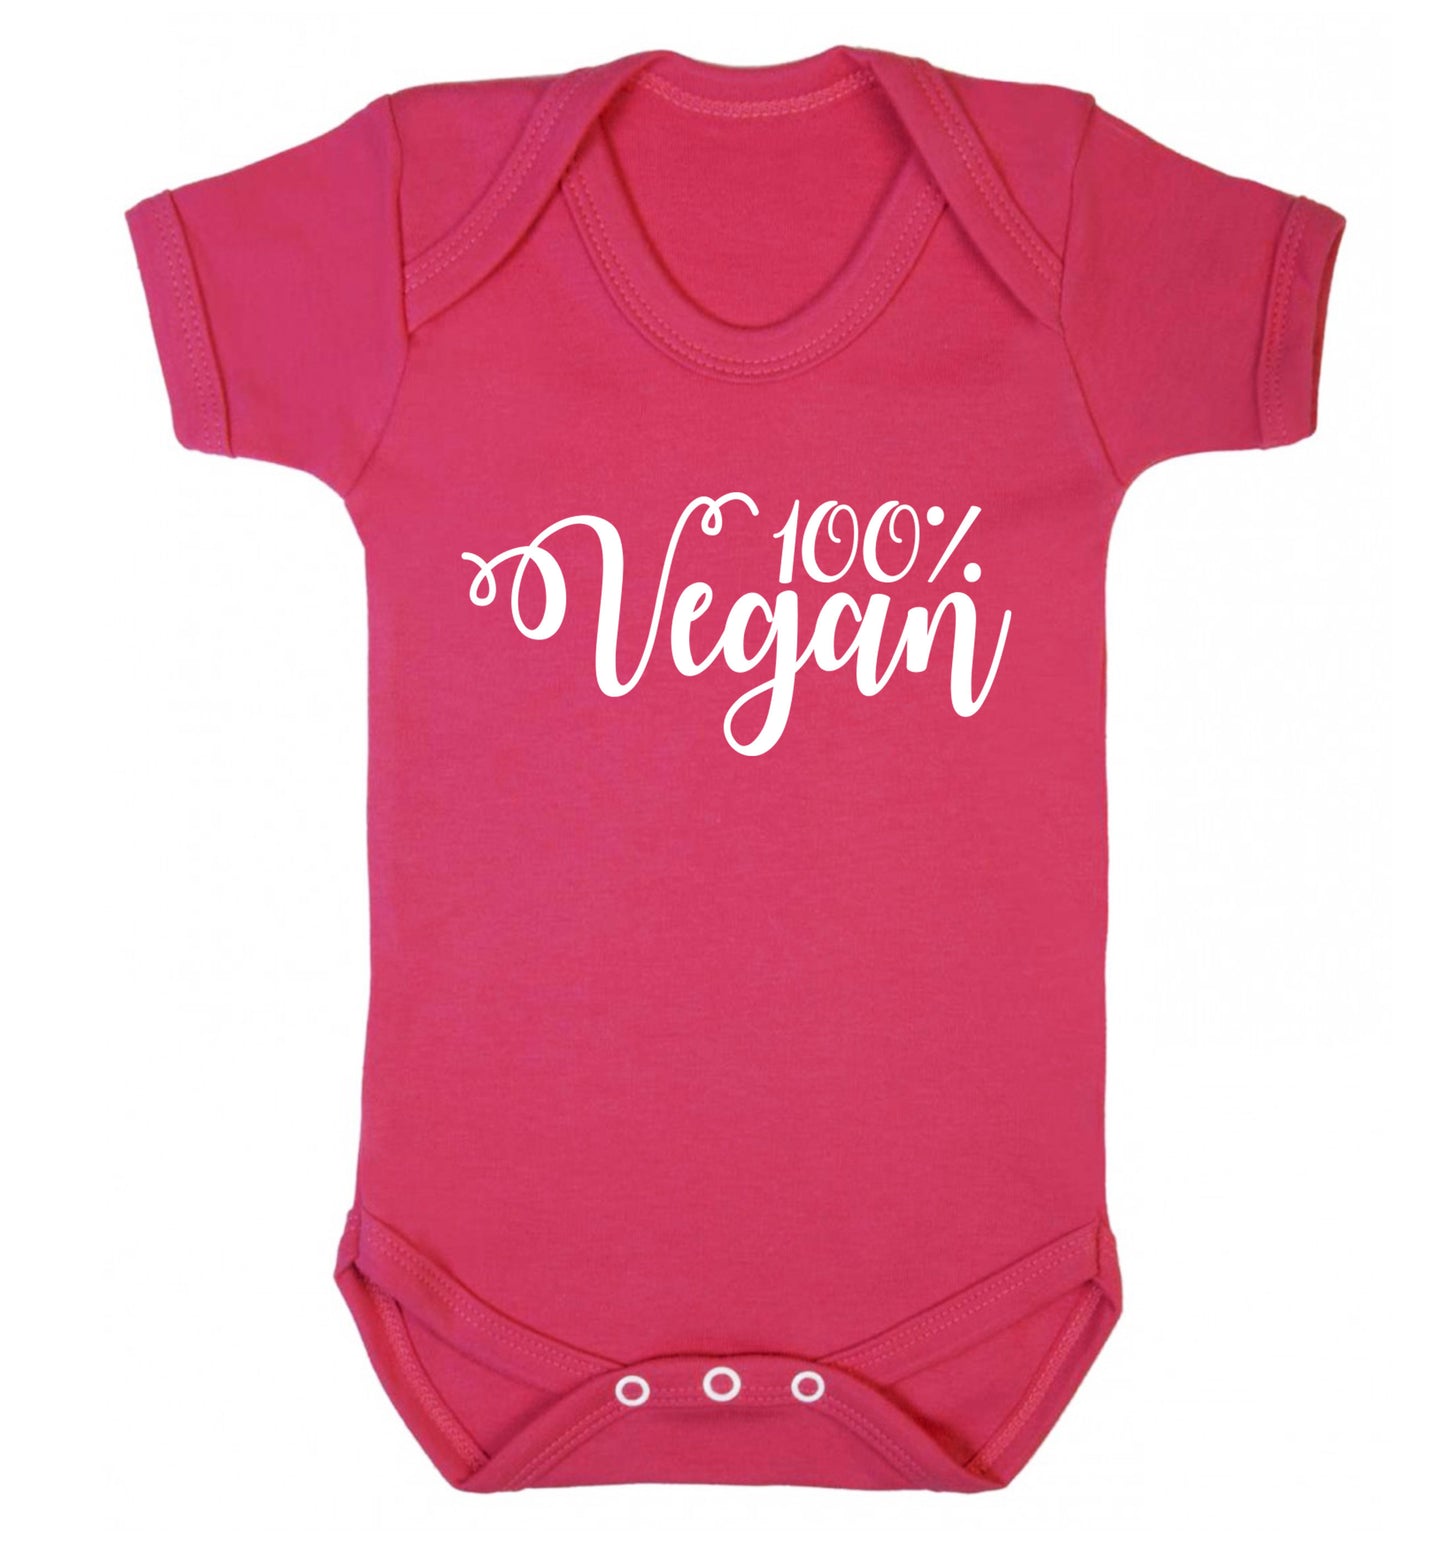 100% Vegan Baby Vest dark pink 18-24 months